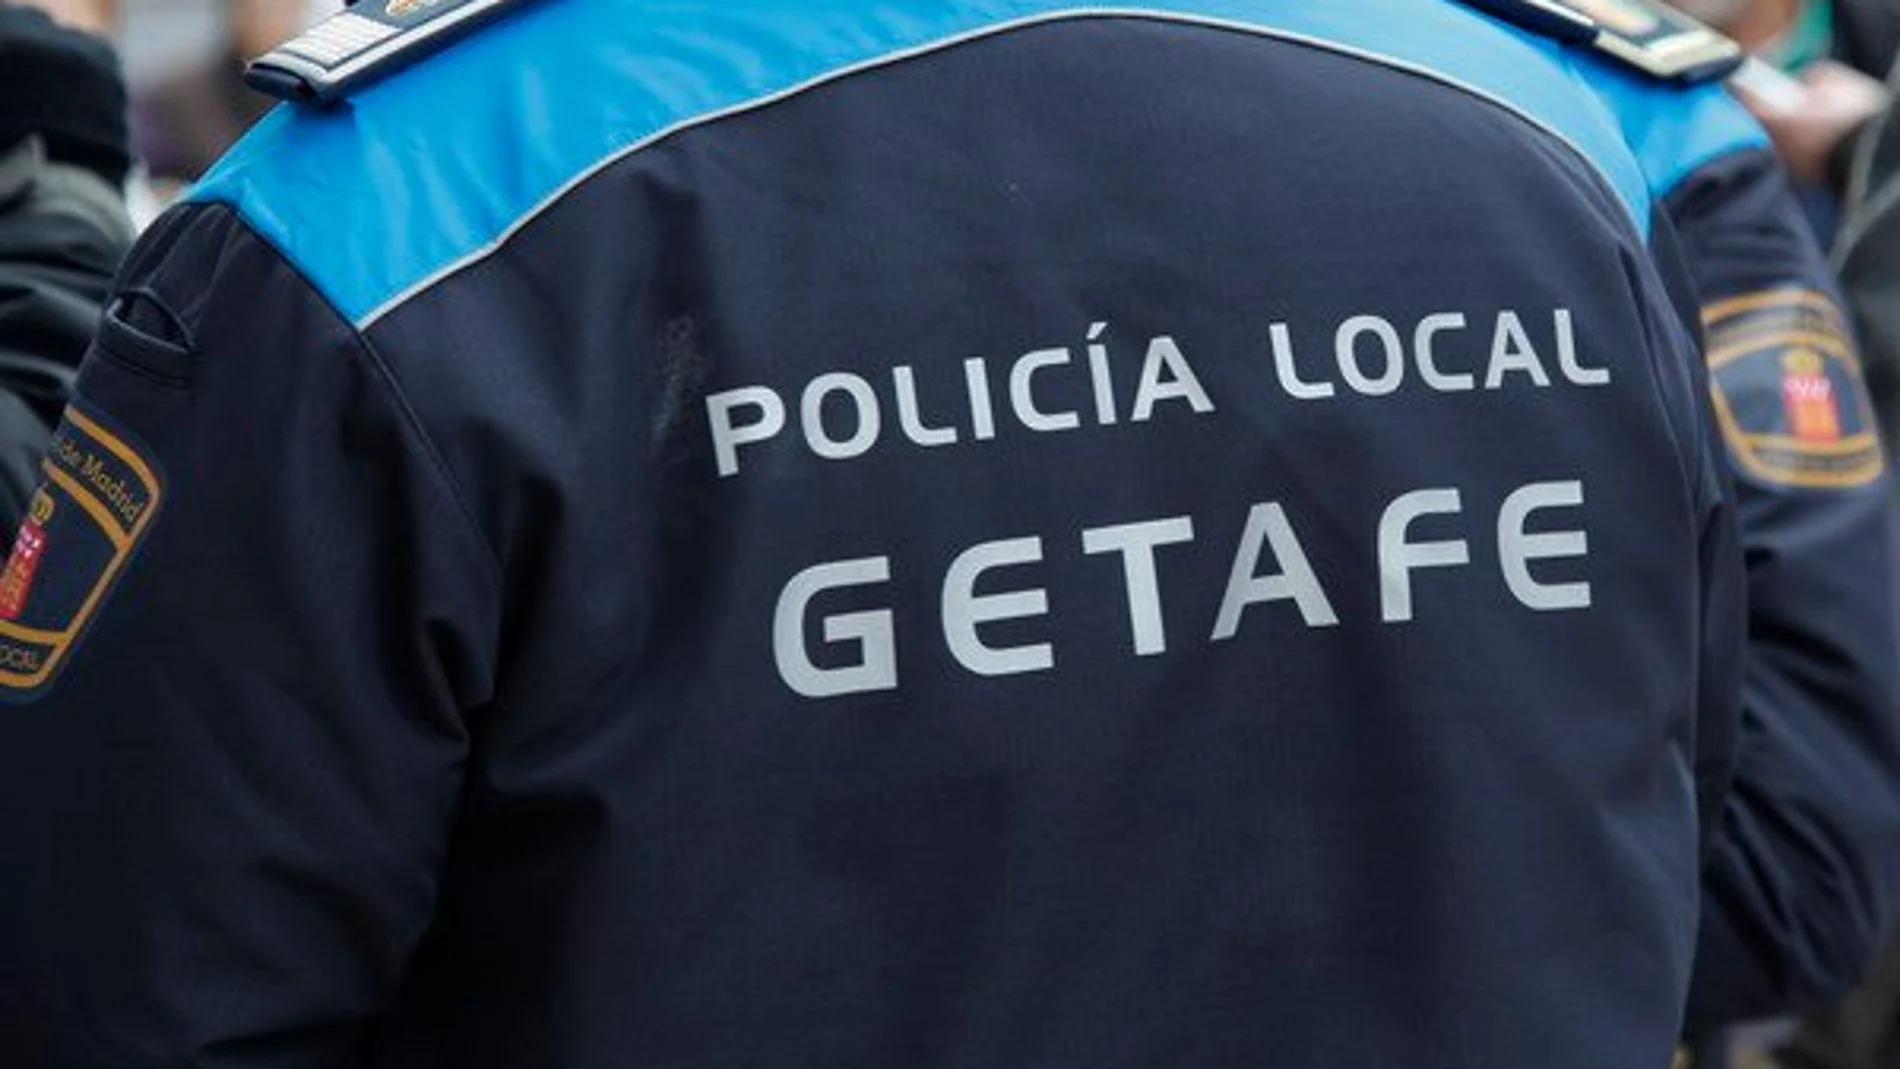 La Policía Local de Getafe no puede multar